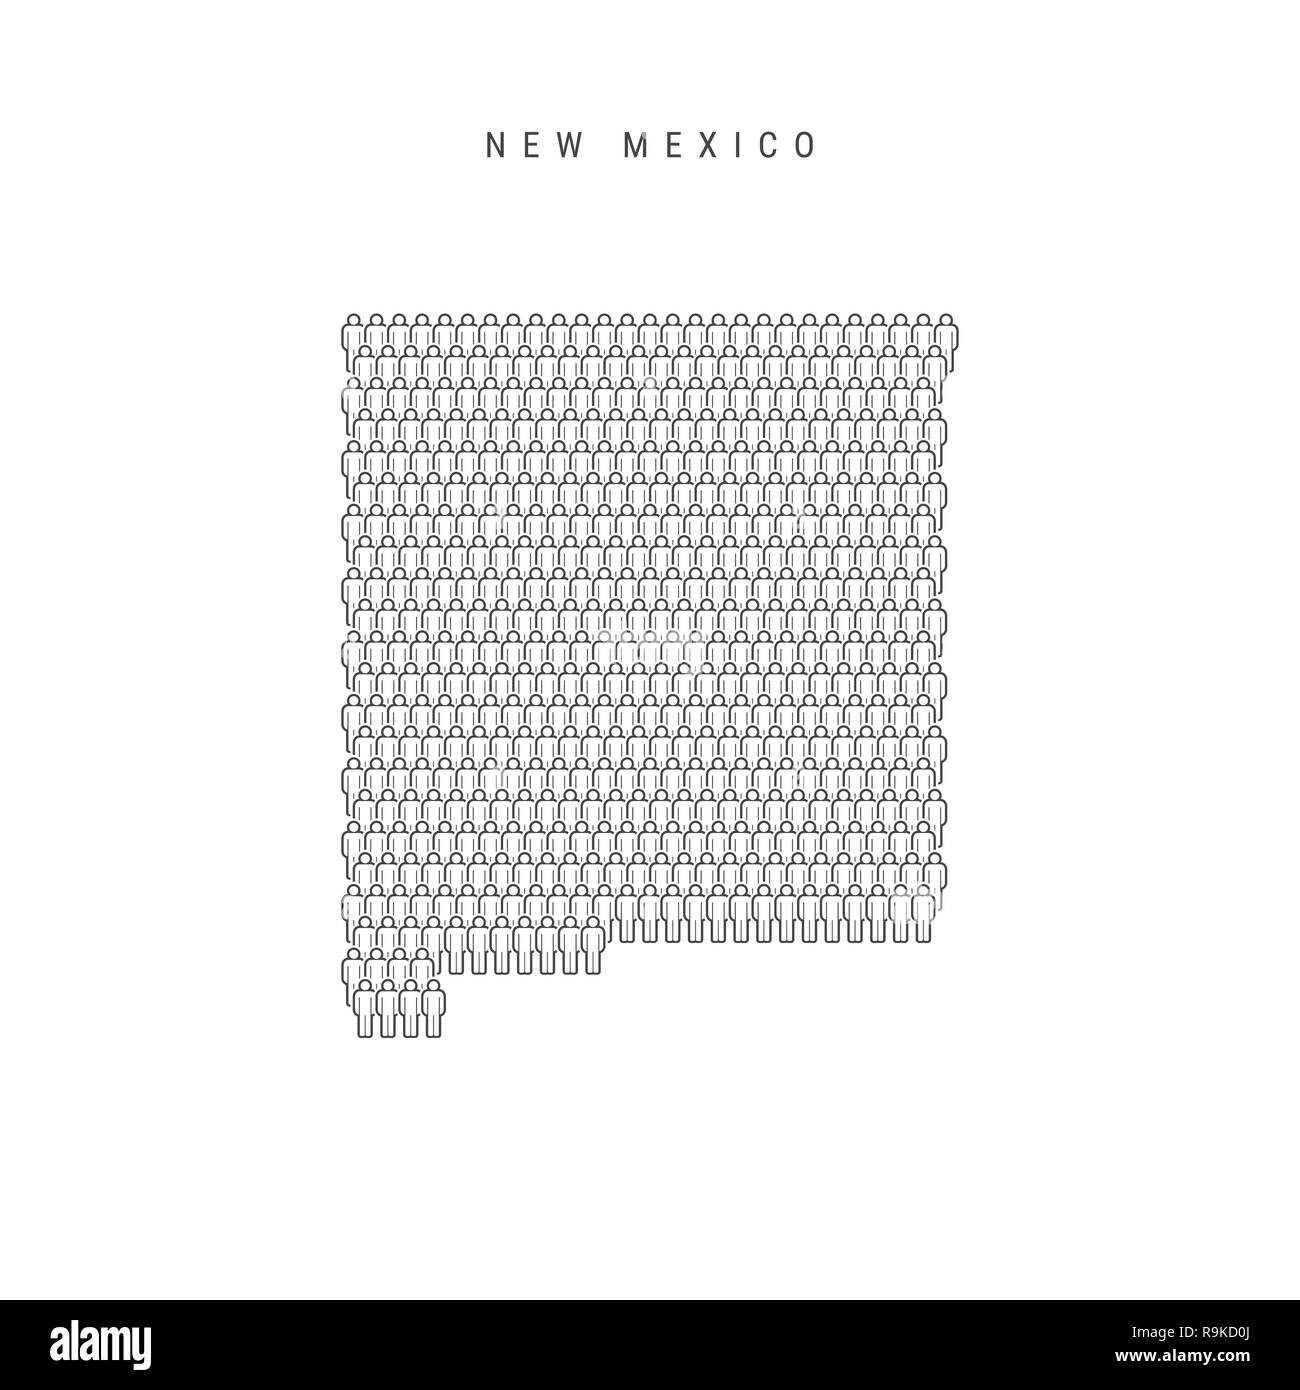 Leute Karte von New Jersey, USA. Stilisierte Silhouette, Leute in der Form einer Karte von New Mexiko. New York Bevölkerung. Abbildung: Isolieren Stockfoto